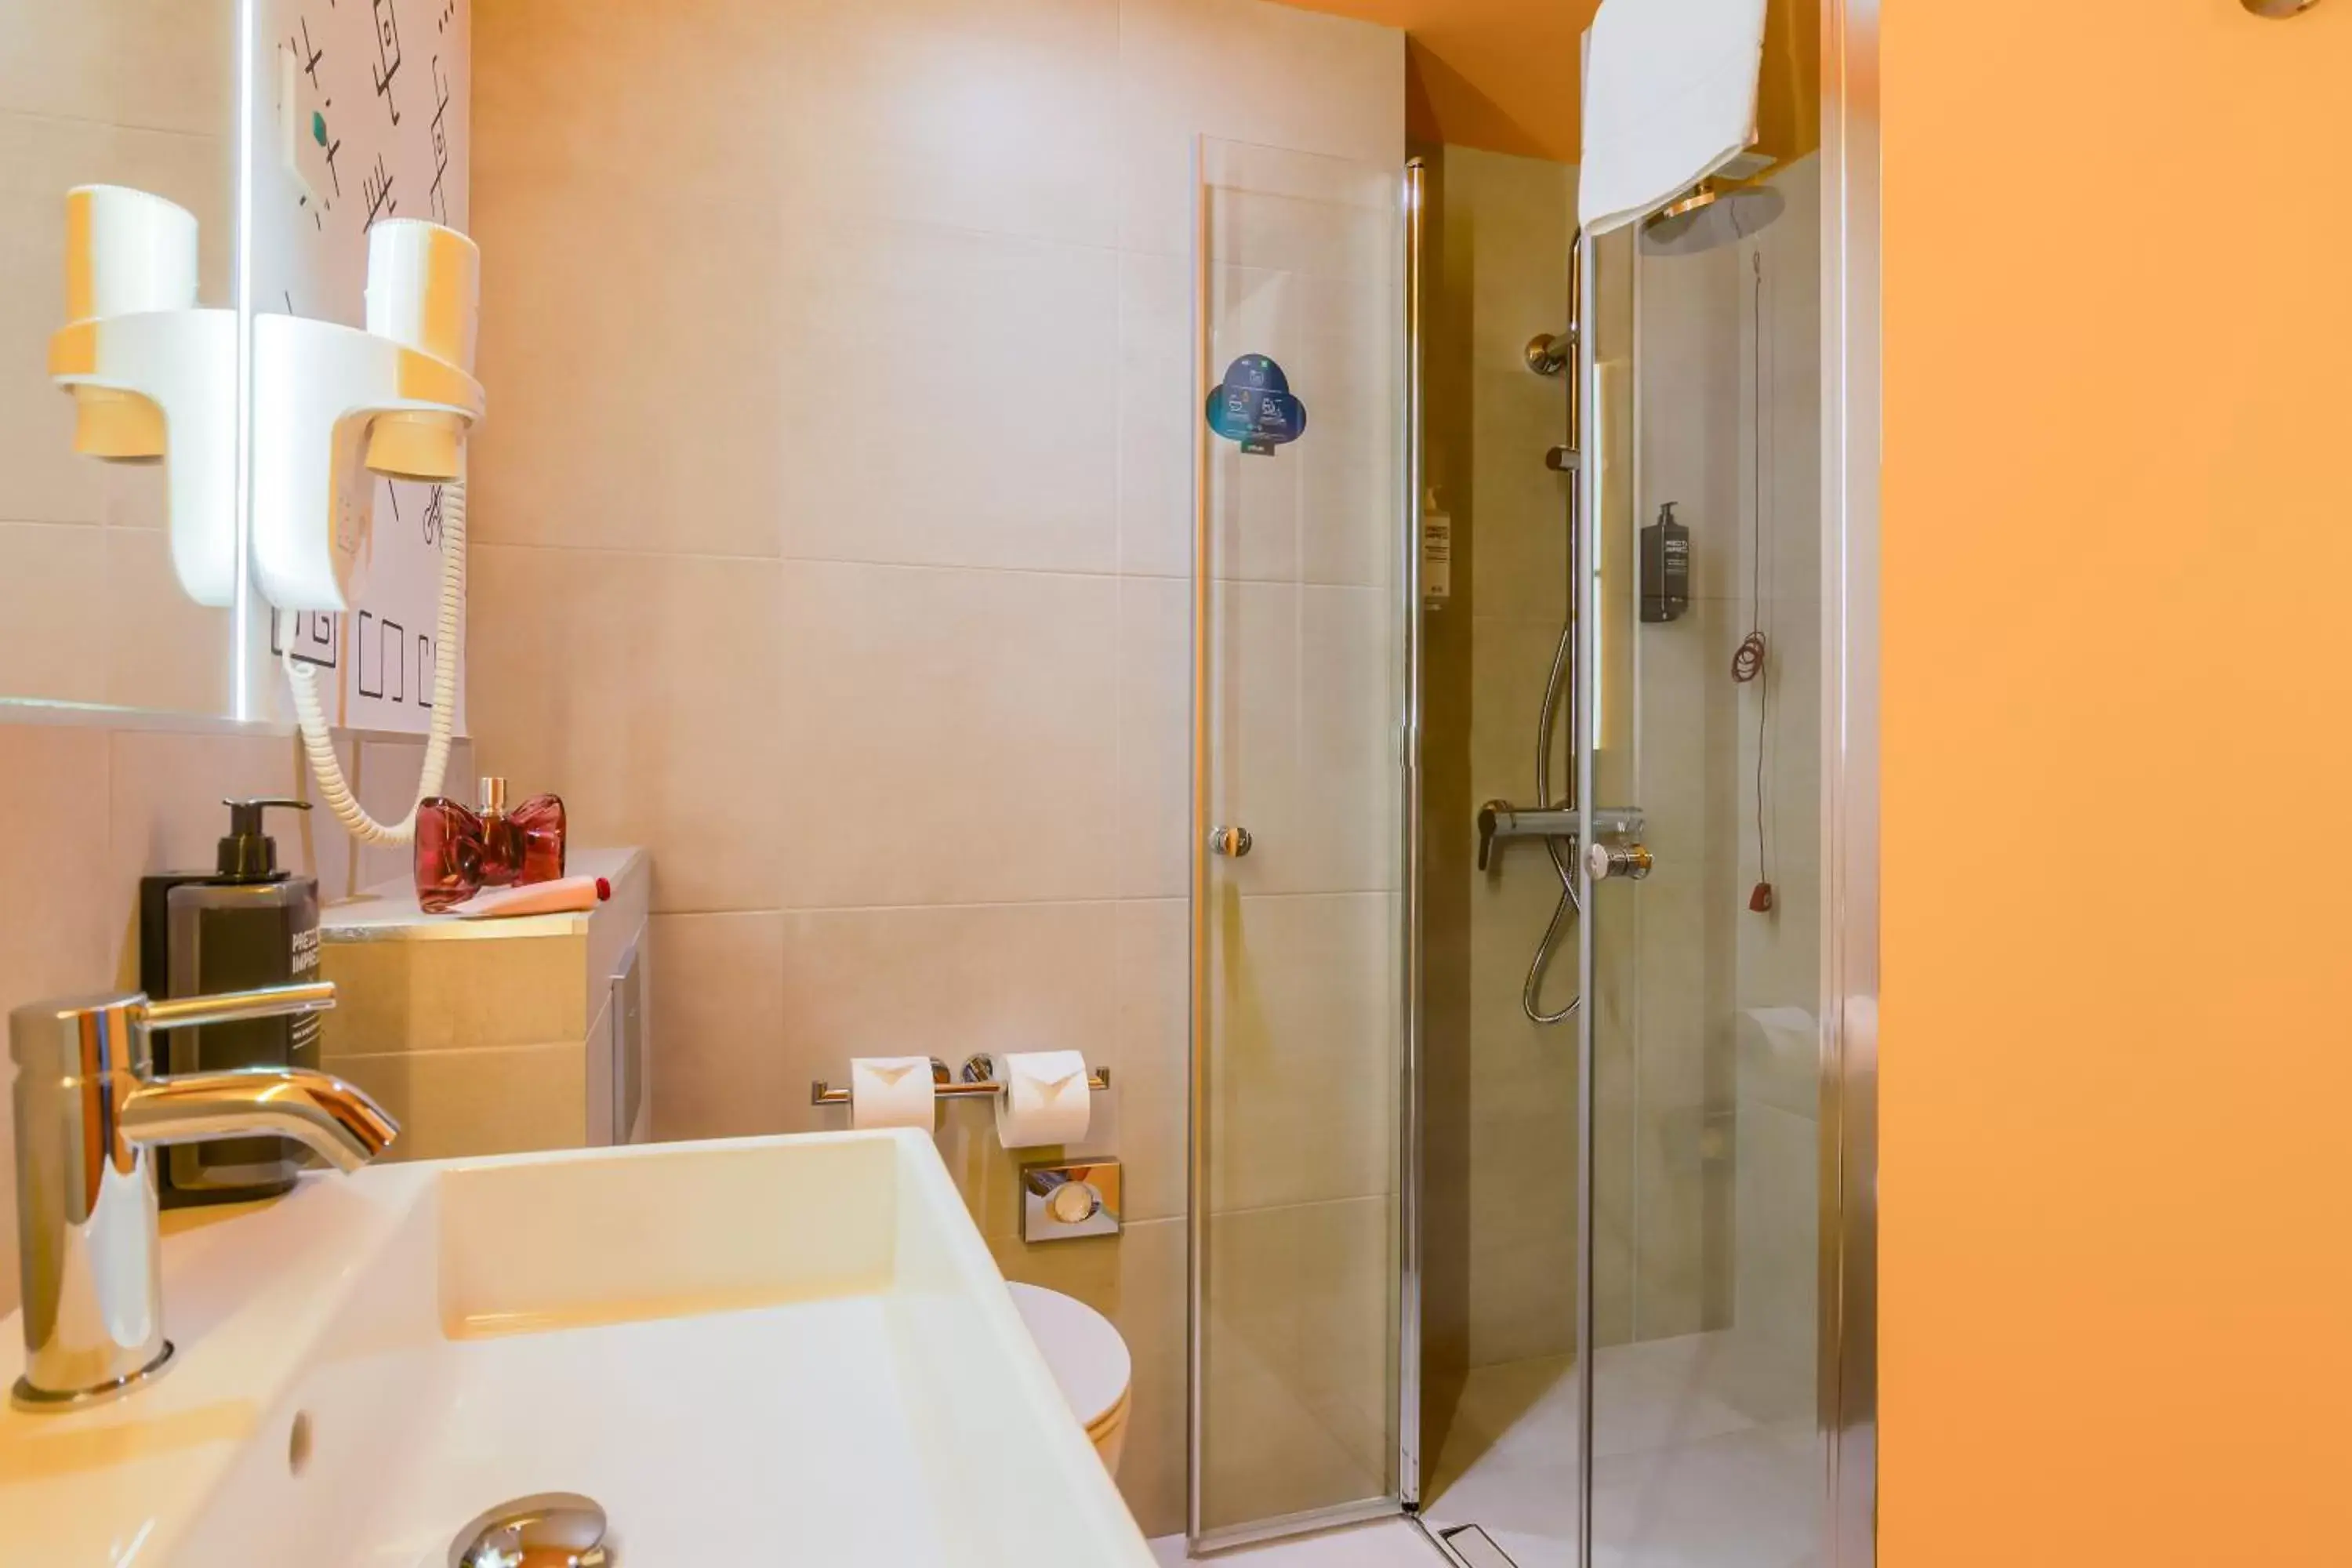 Shower, Bathroom in ibis Styles Bucharest City Center